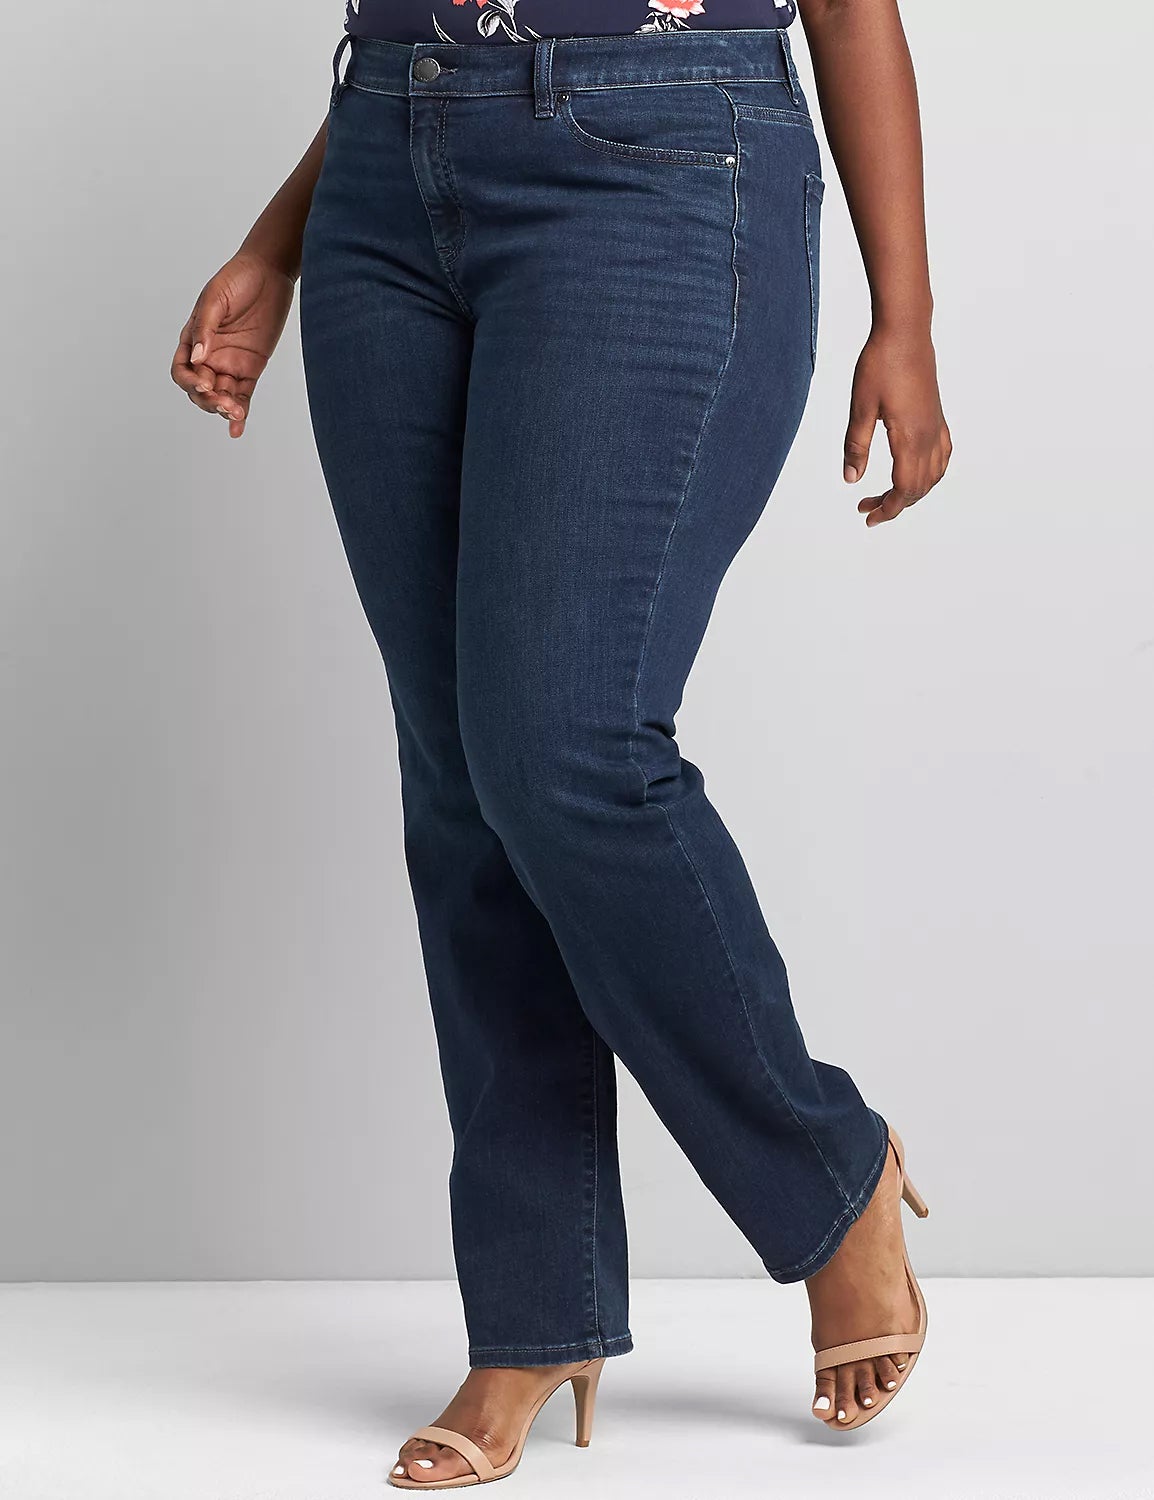  Jeans For Fat Women